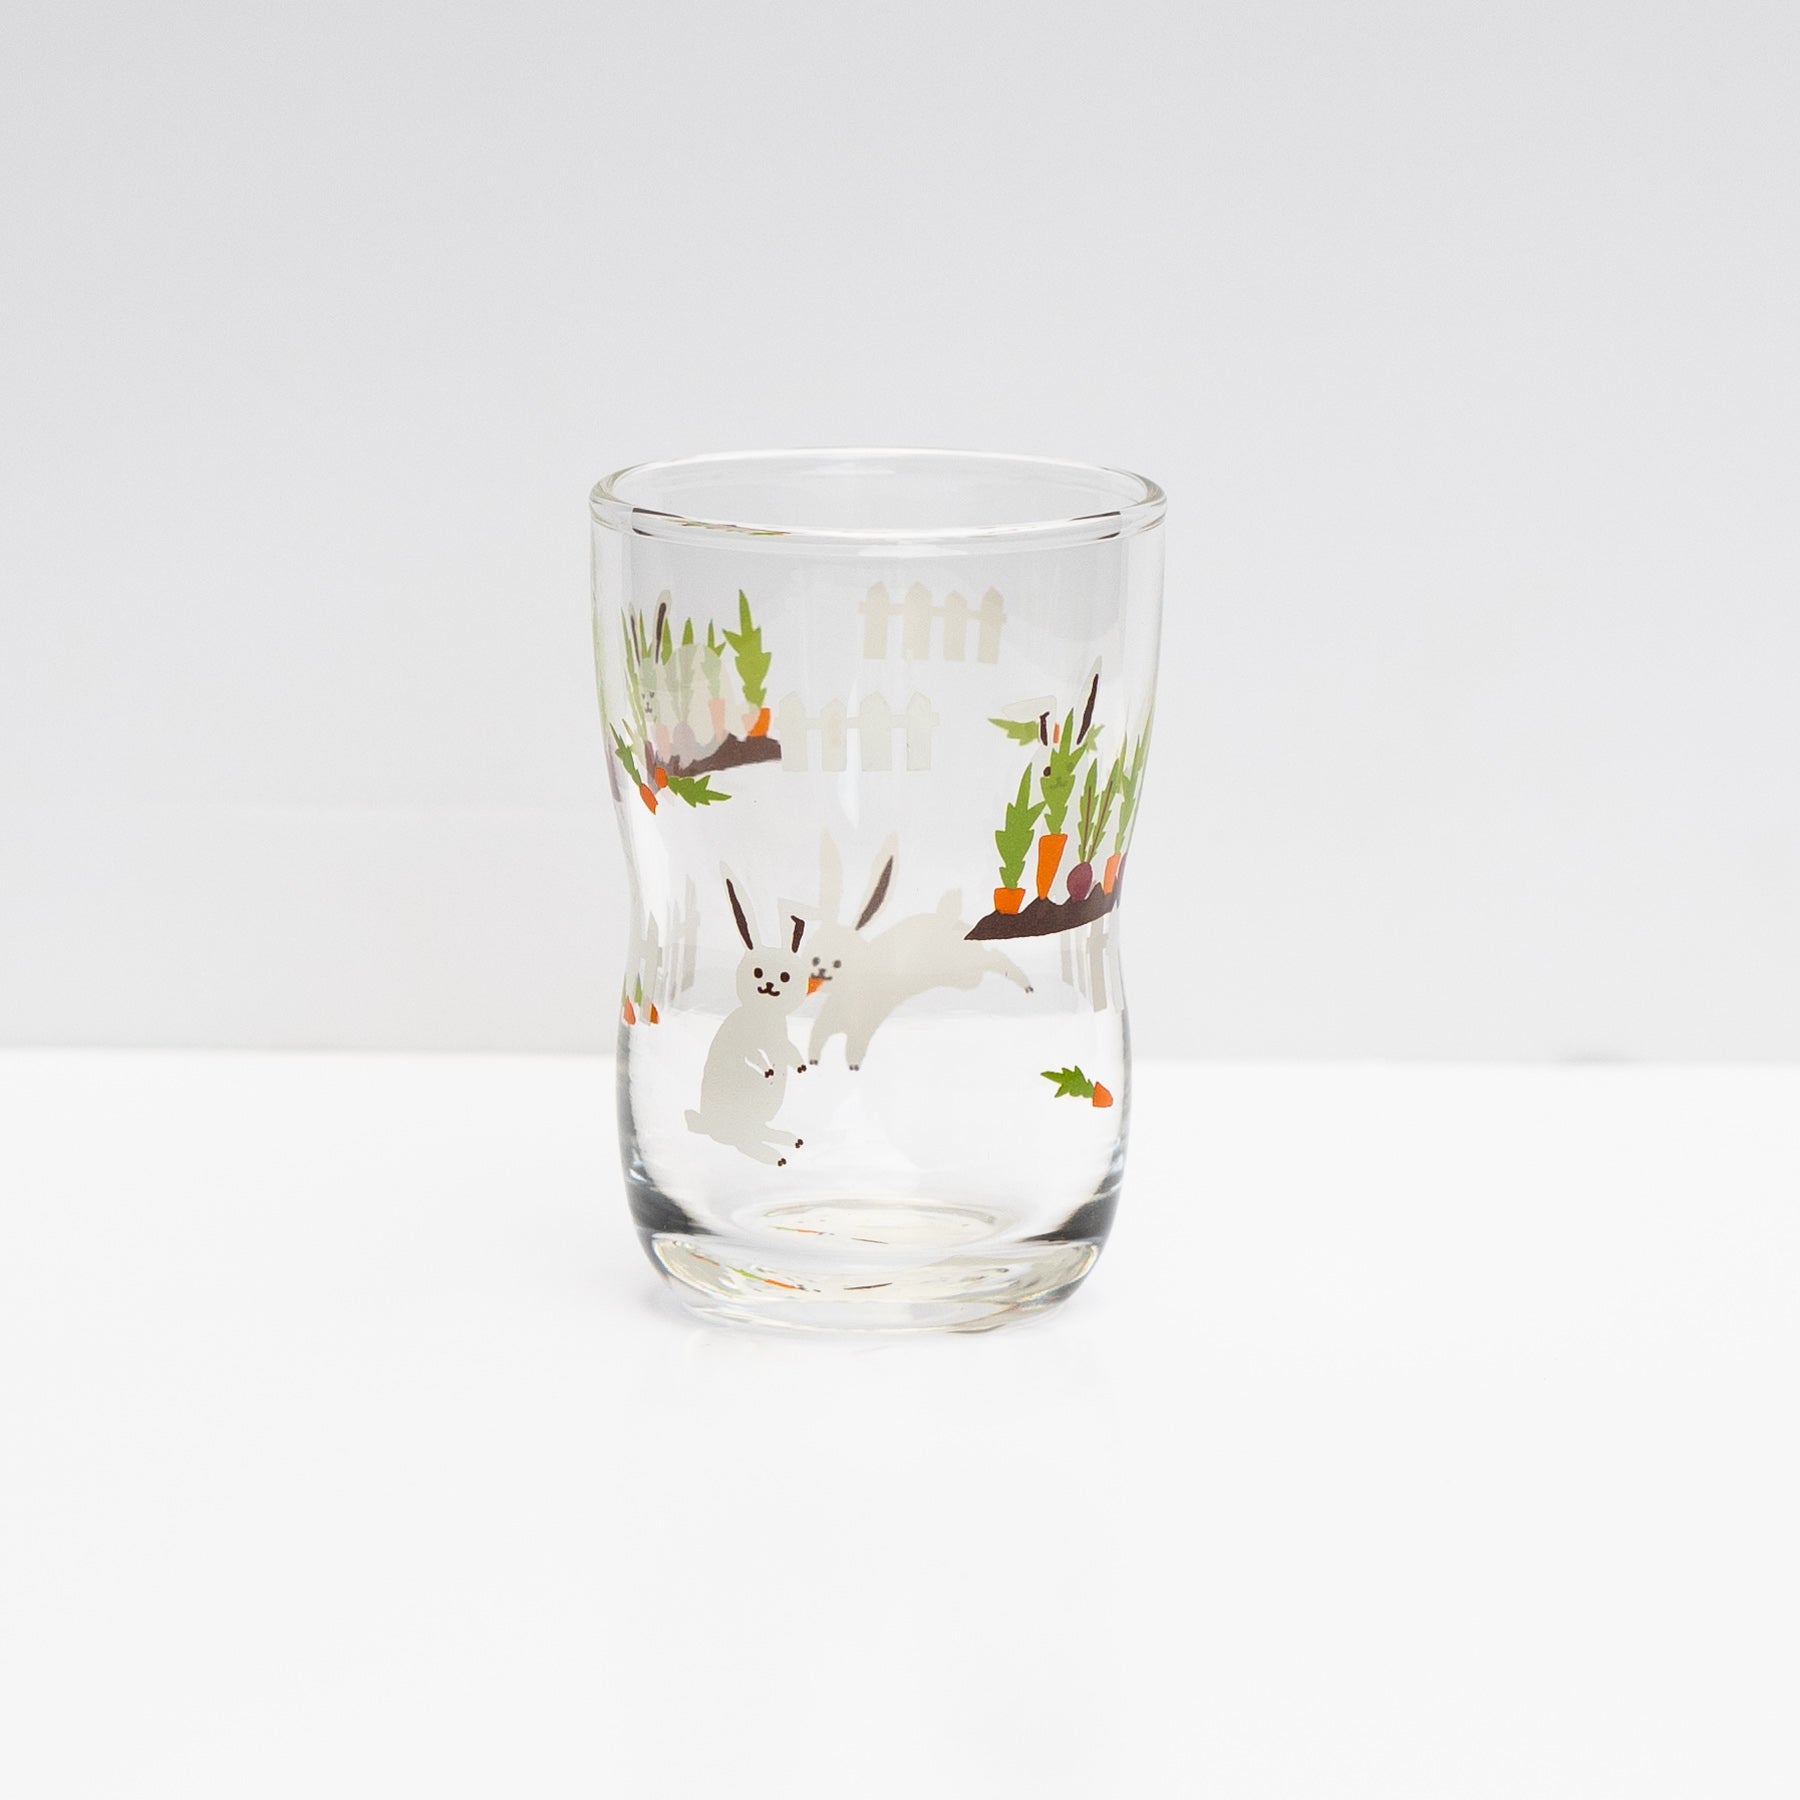 Japanese kids glass with rabbit print by IIshizuka Glassshu